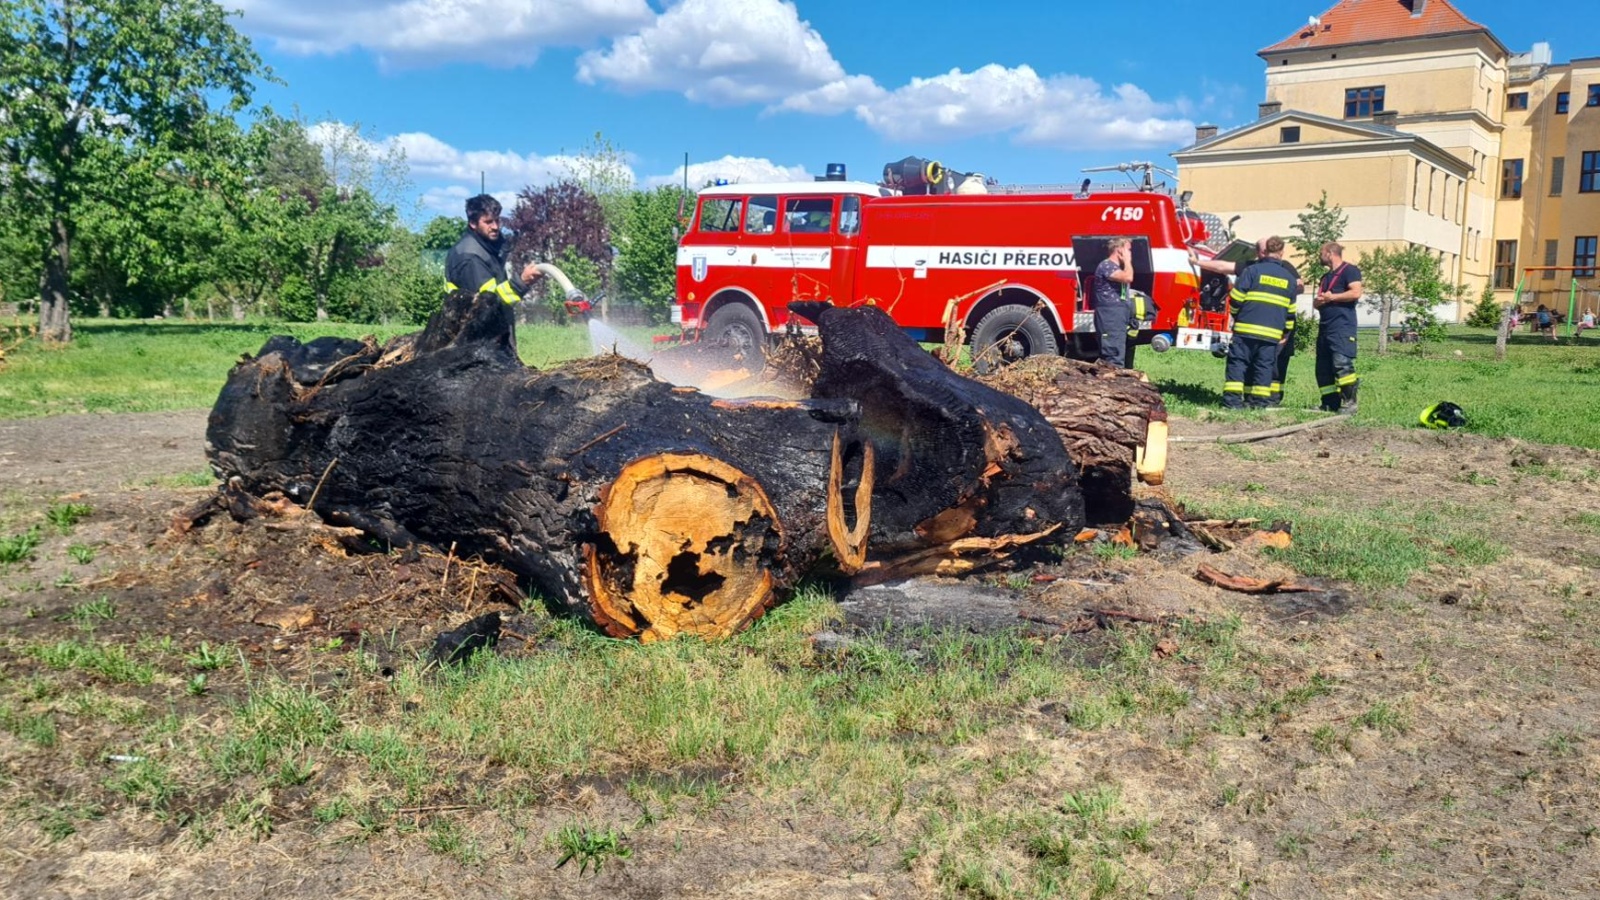 140524-Požár obrovských zbytků starého uschlého stromu na školní zahradě v Přerově nad Labem v okrese Nymburk.jpg